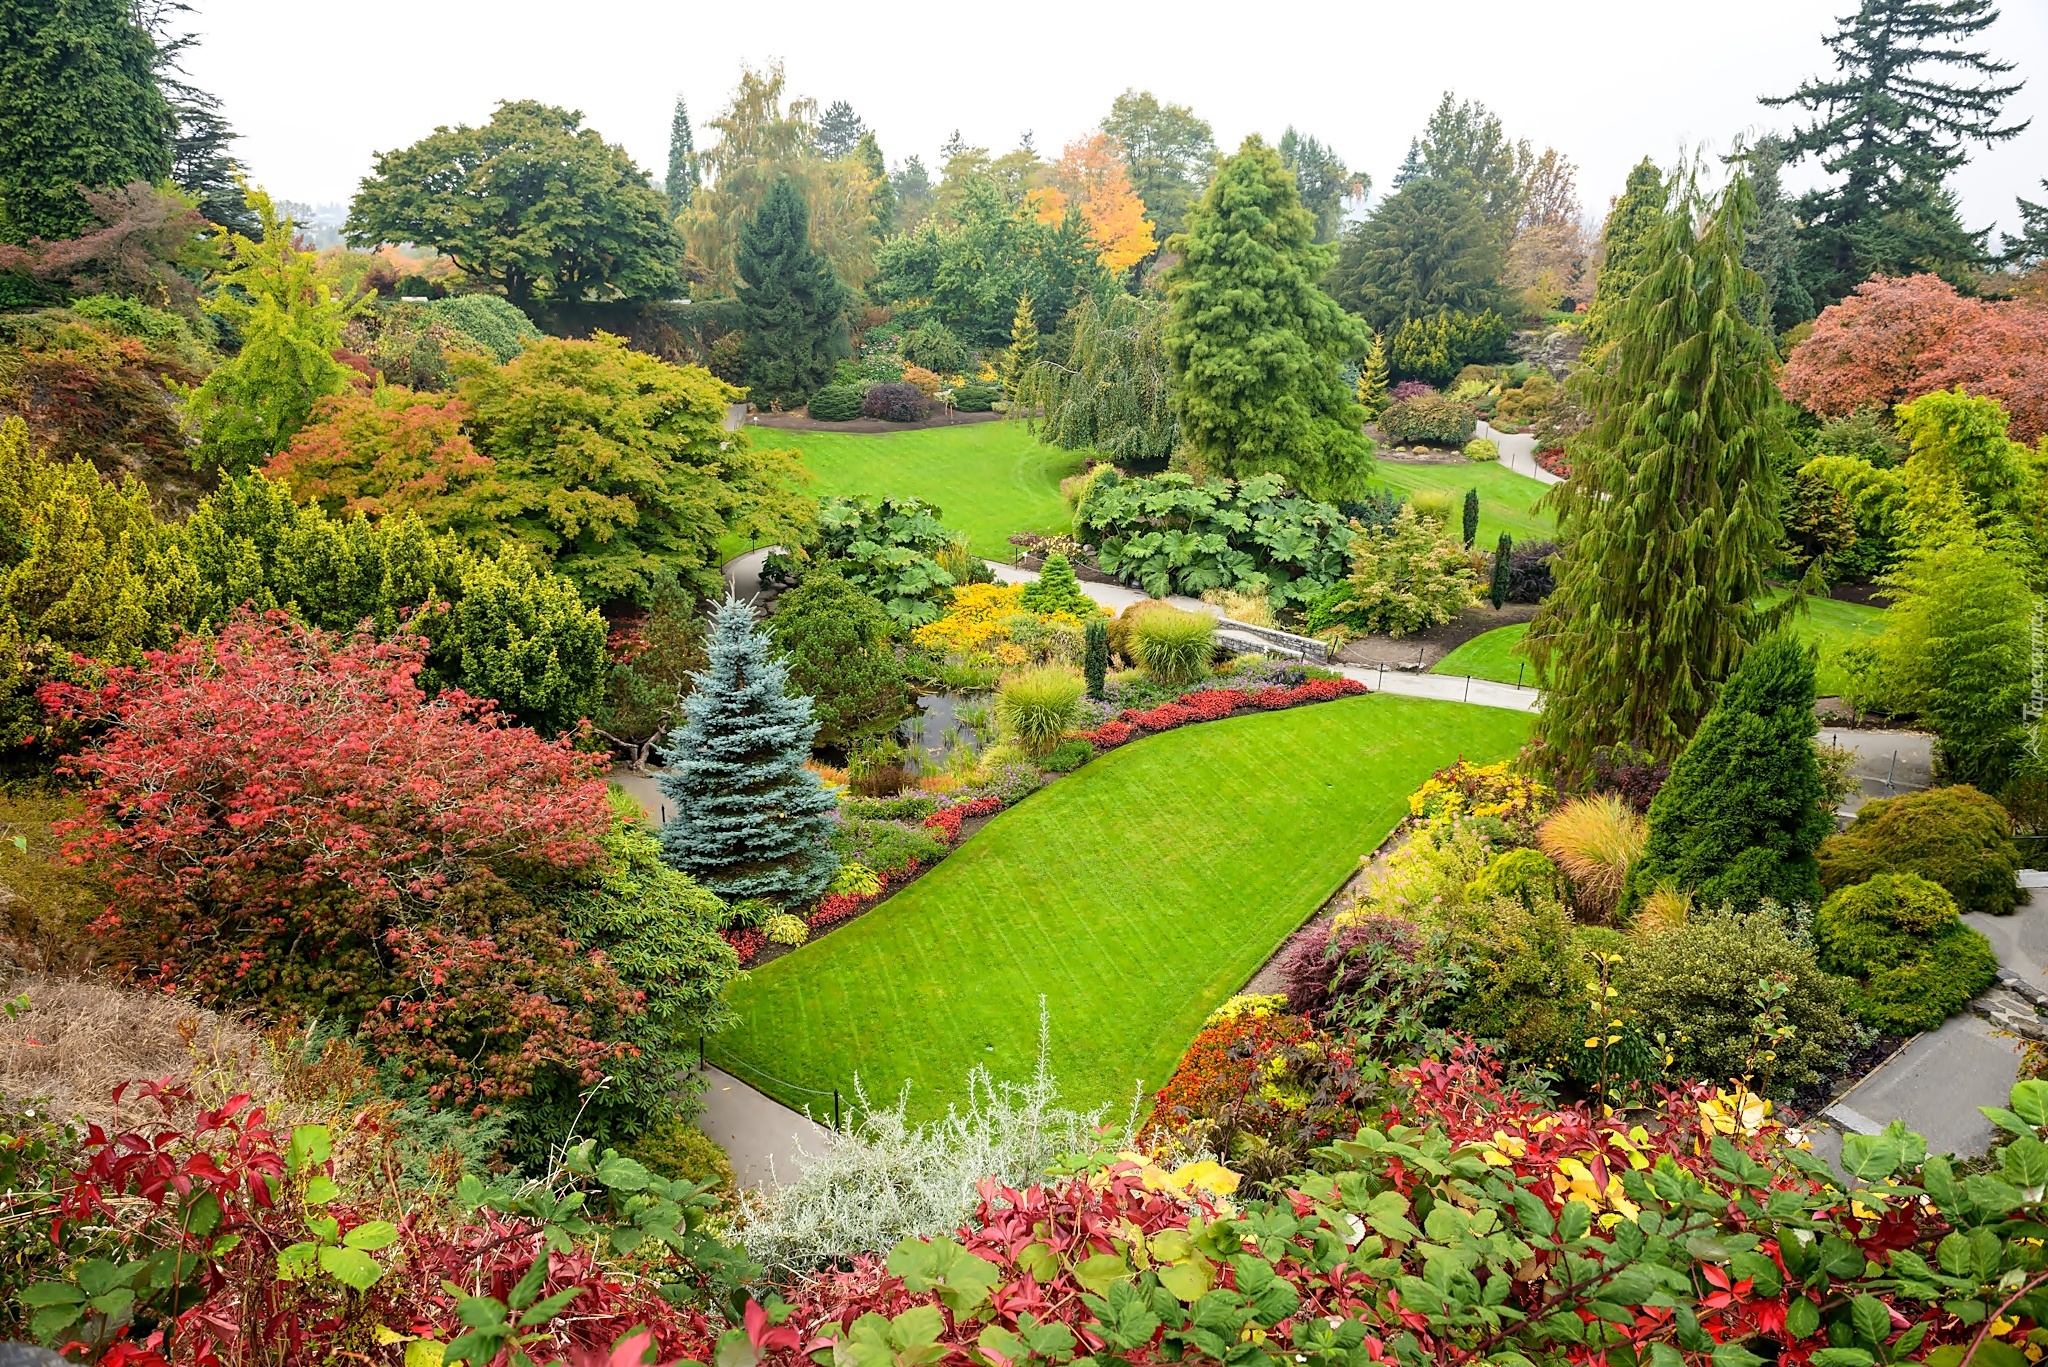 З саду. Парк Квин Элизабет Ванкувер. Парк королевы Елизаветы в Ванкувере. Английский сад пейзажный парк. Парк дармера в Англии.